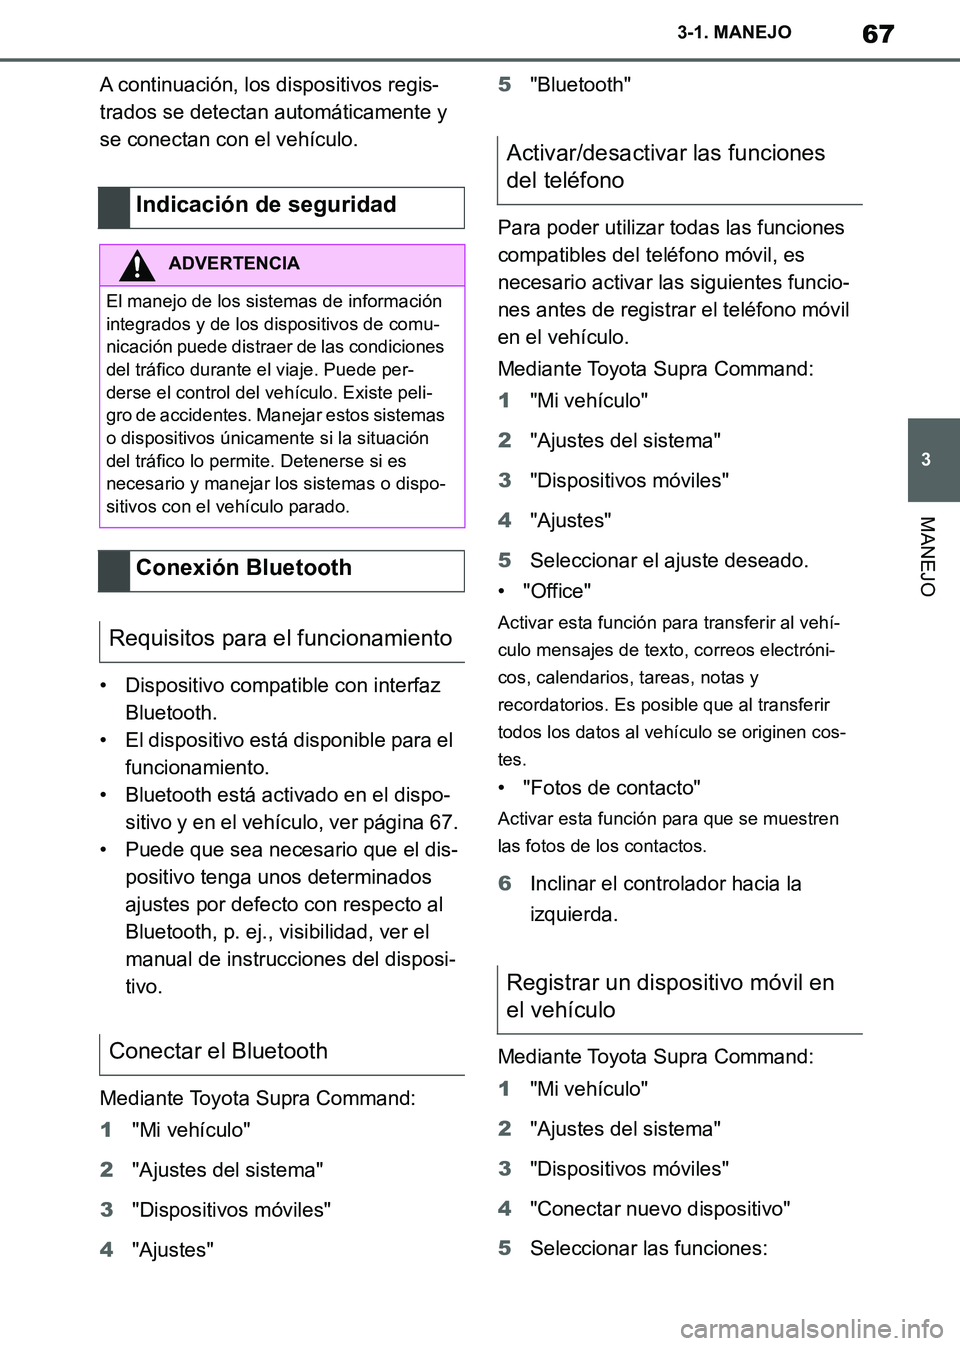 TOYOTA SUPRA 2019  Manuale de Empleo (in Spanish) 67
3
Supra Owners Manual_ES
3-1. MANEJO
MANEJO
A continuación, los dispositivos regis-
trados se detectan automáticamente y 
se conectan con el vehículo.
• Dispositivo compatible con interfaz 
B